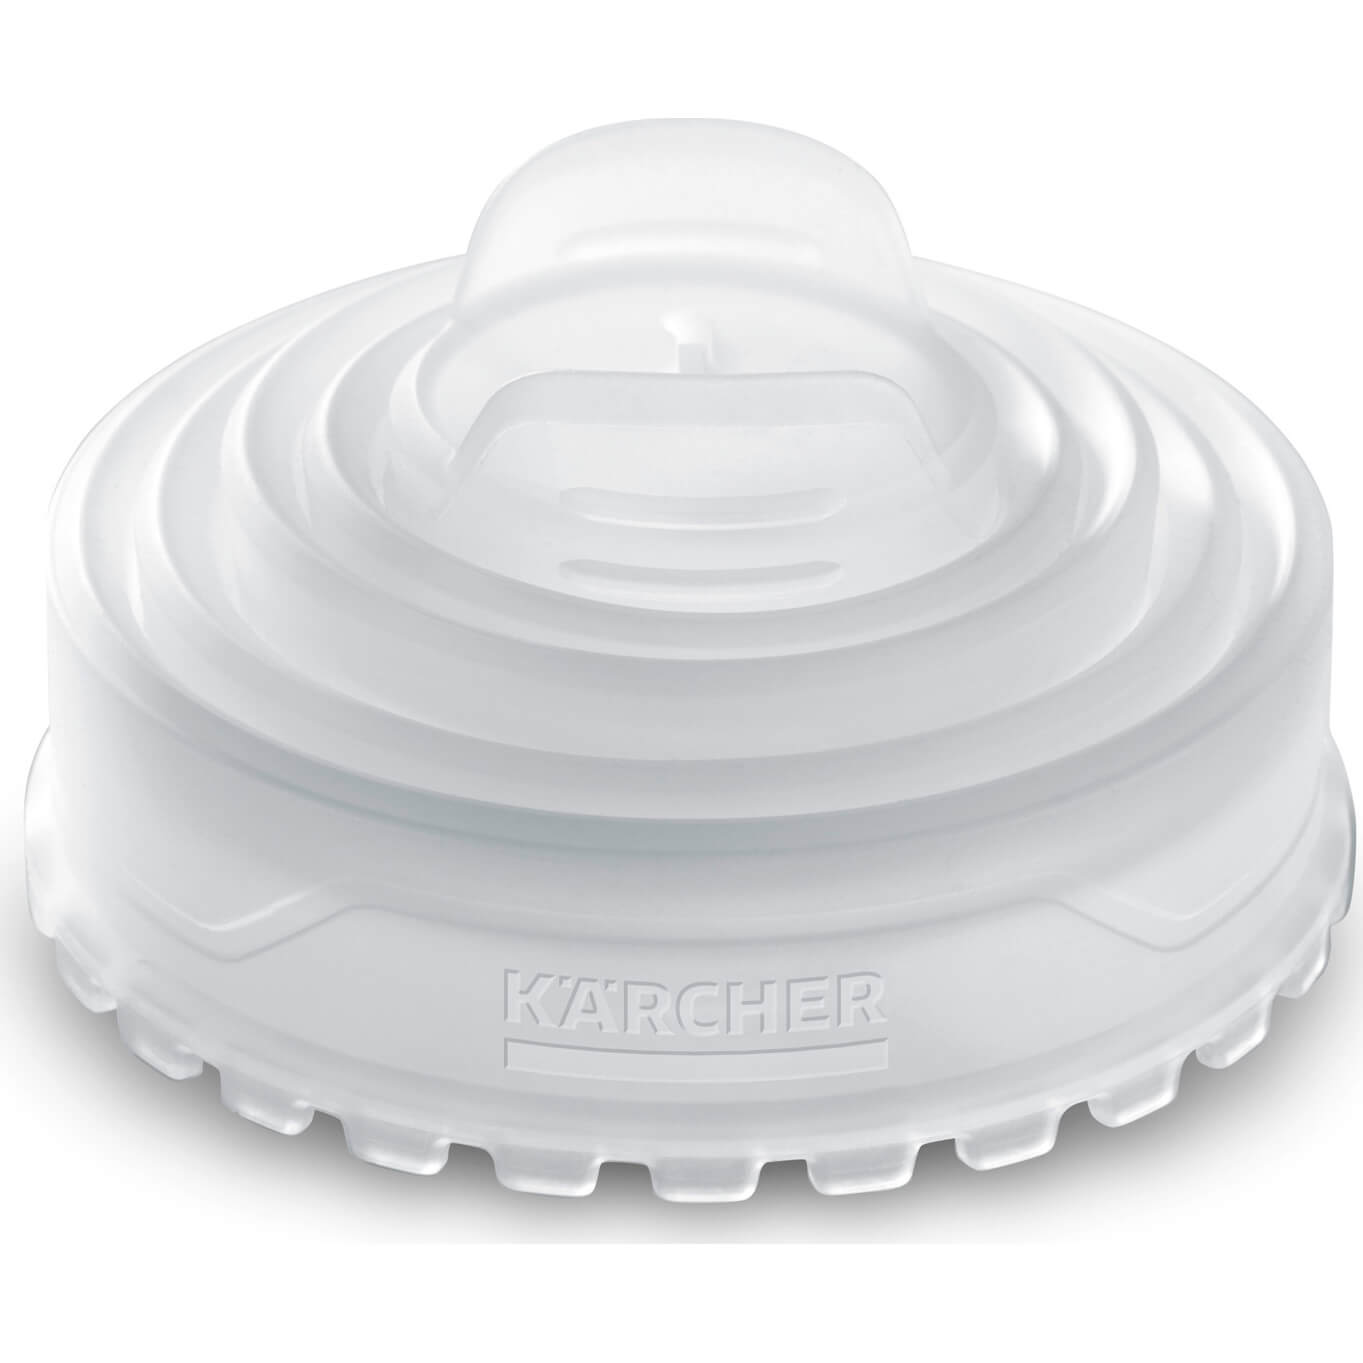 Karcher Splash Guard for OC 3 Portable Cleaner